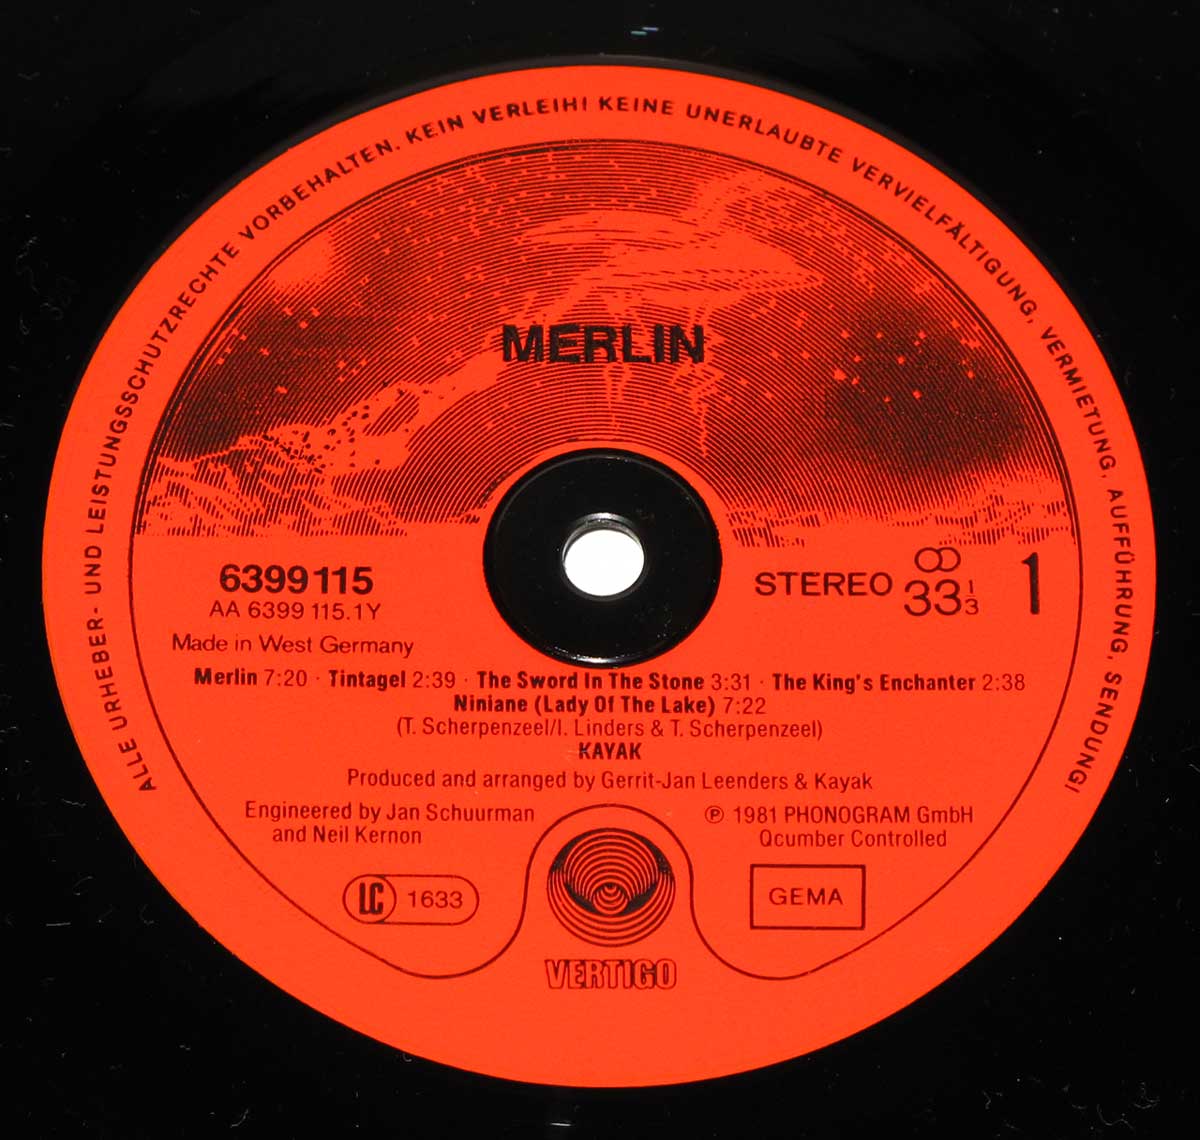 Close-up Photo of "Merlin" the Red "VERTIGO" 6399 115 Record Label  